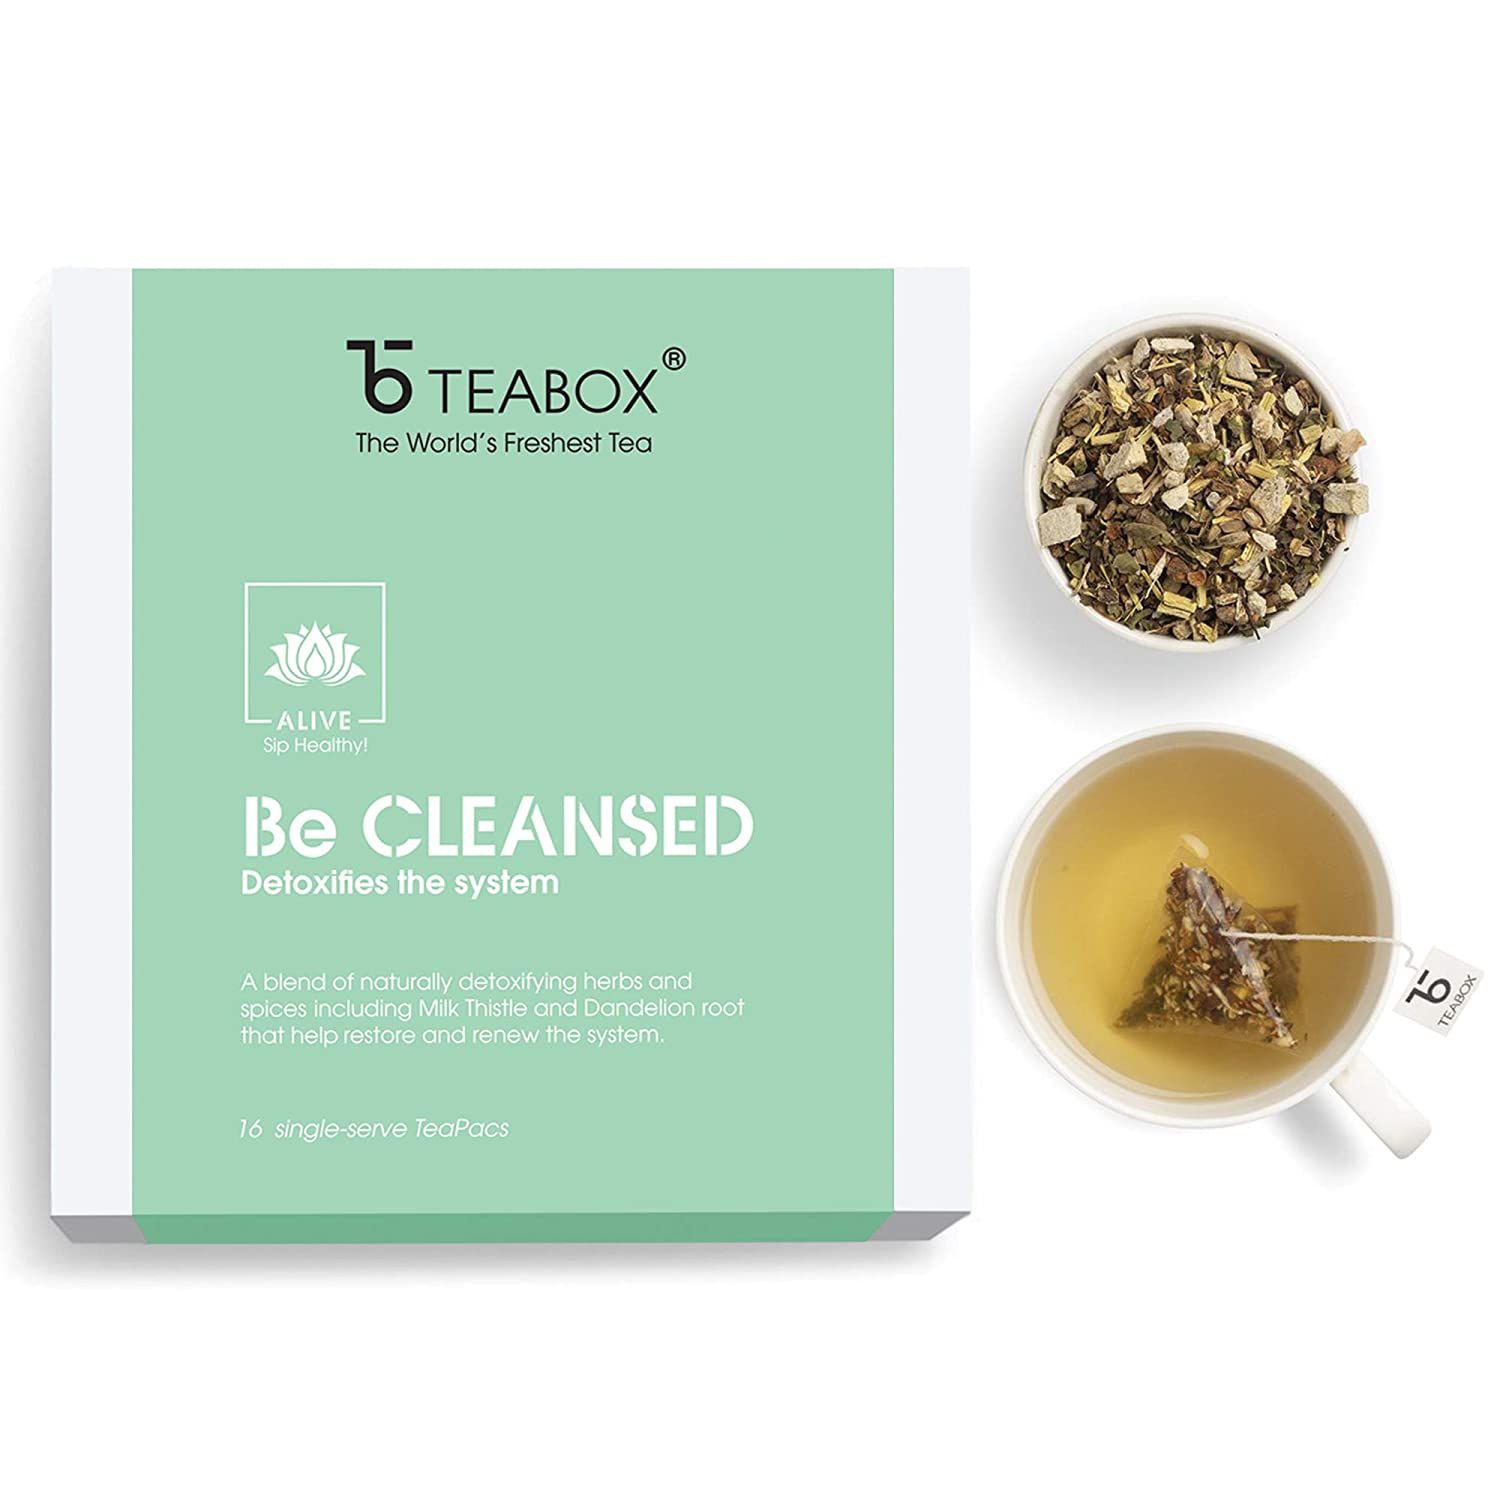 Teabox Wellness Tea Image